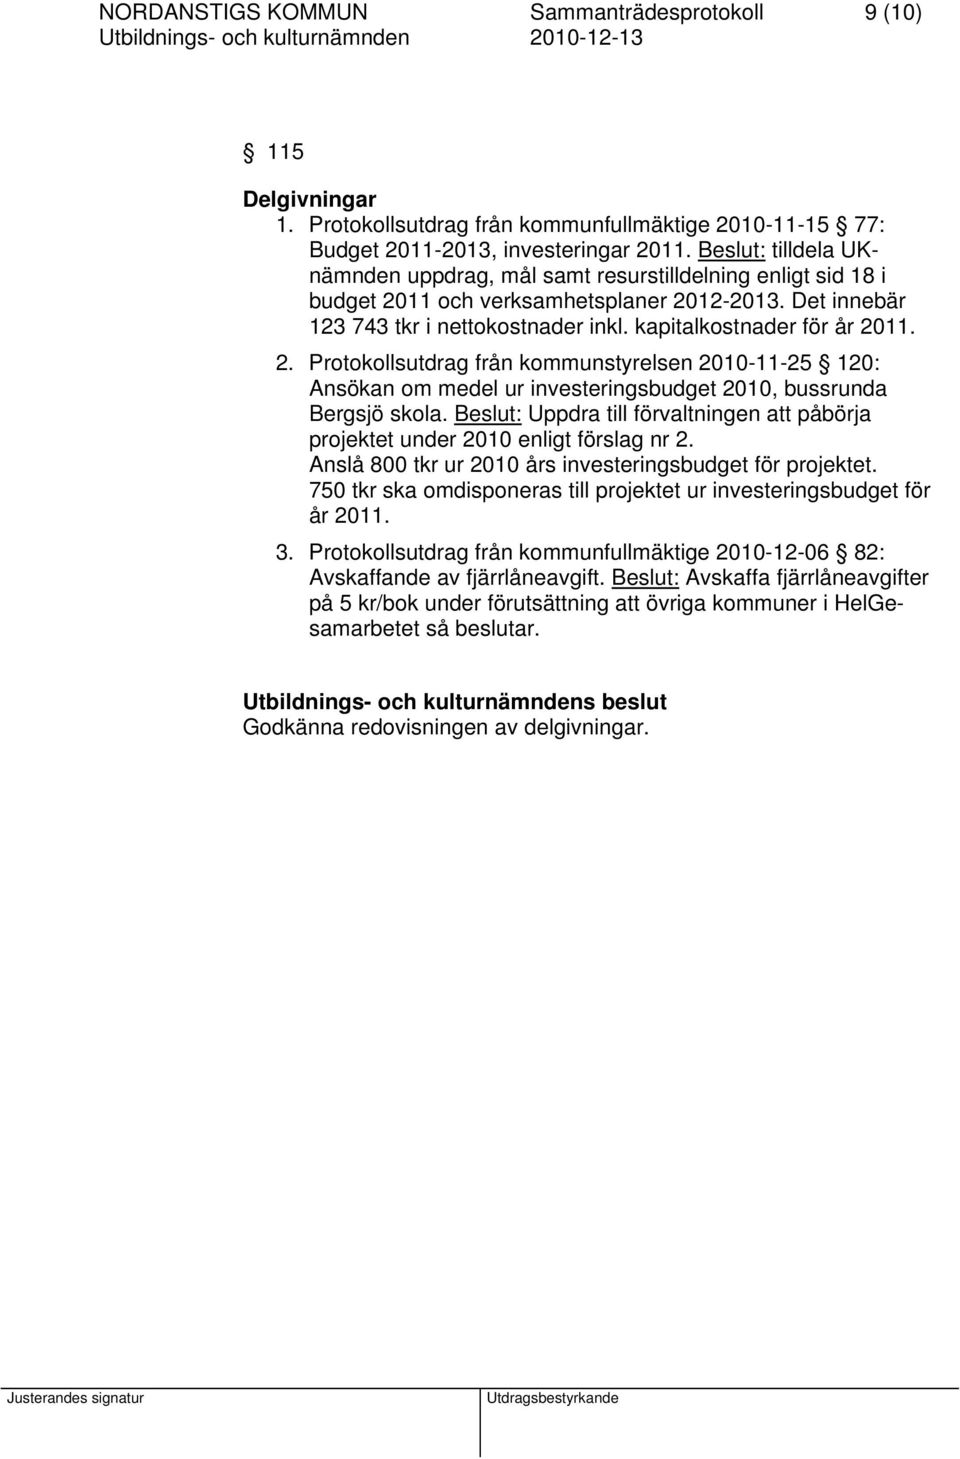 2. Protokollsutdrag från kommunstyrelsen 2010-11-25 120: Ansökan om medel ur investeringsbudget 2010, bussrunda Bergsjö skola.